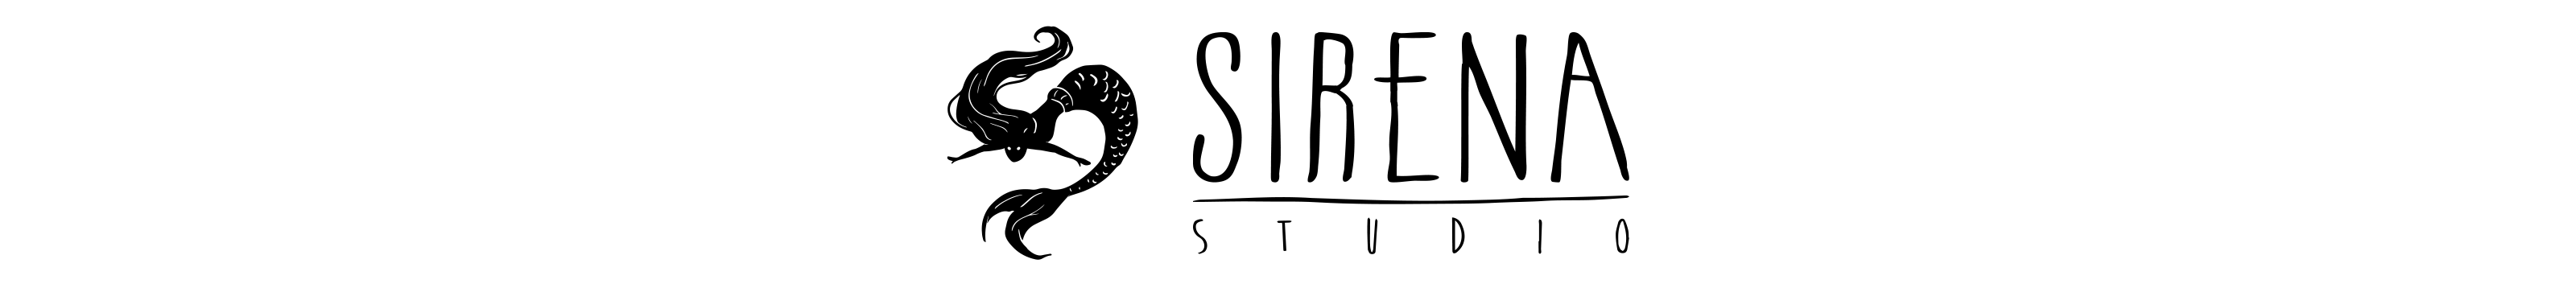 Sirena Studio's profile banner